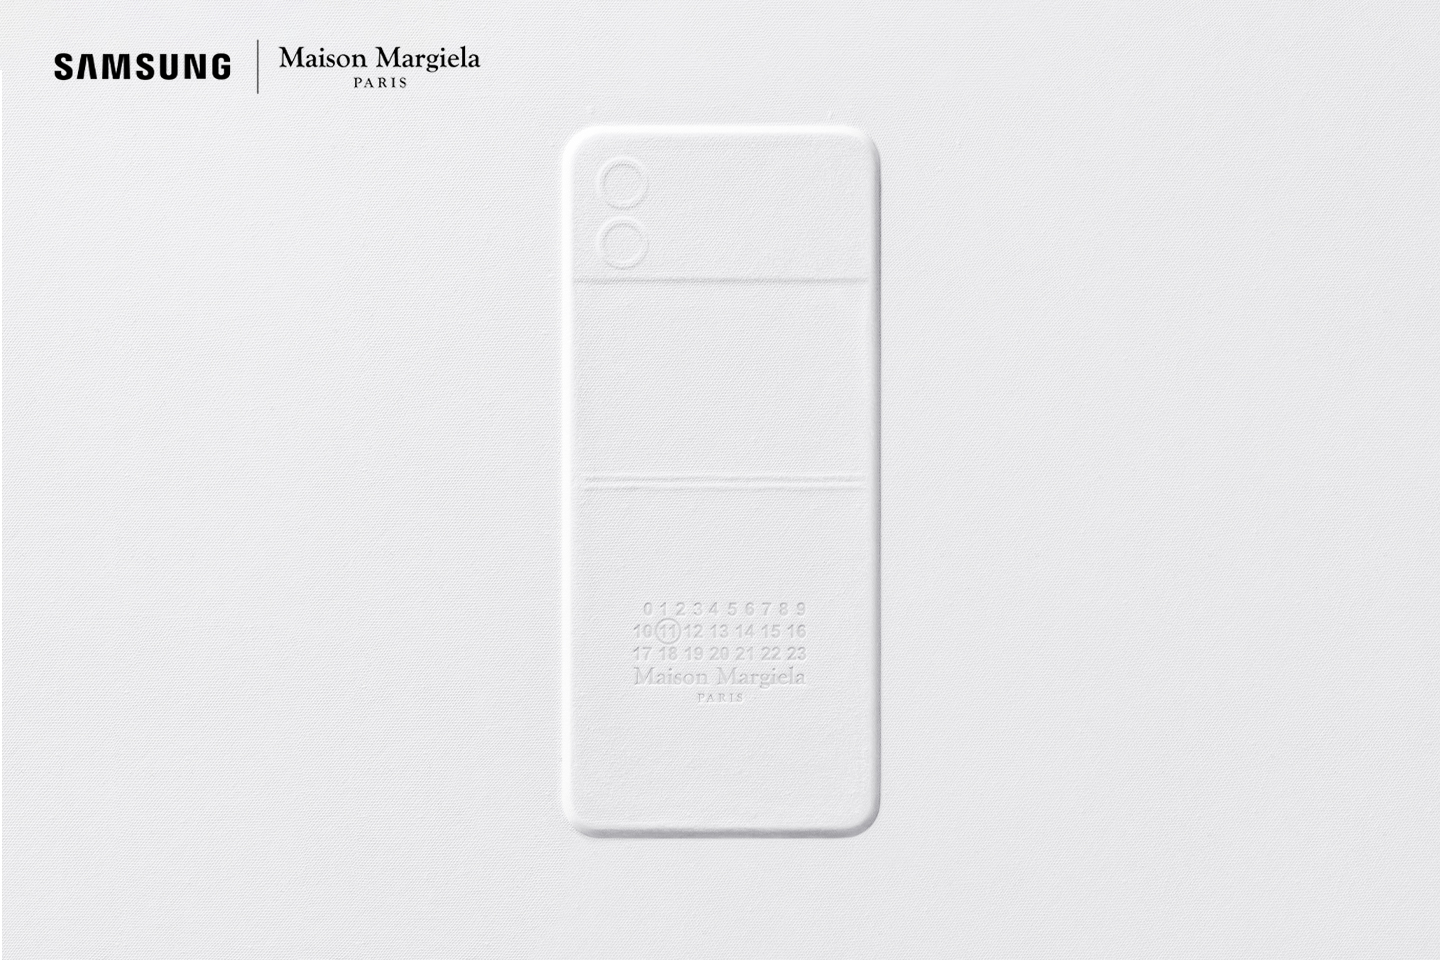 Samsung partnership with Maison Margiela 